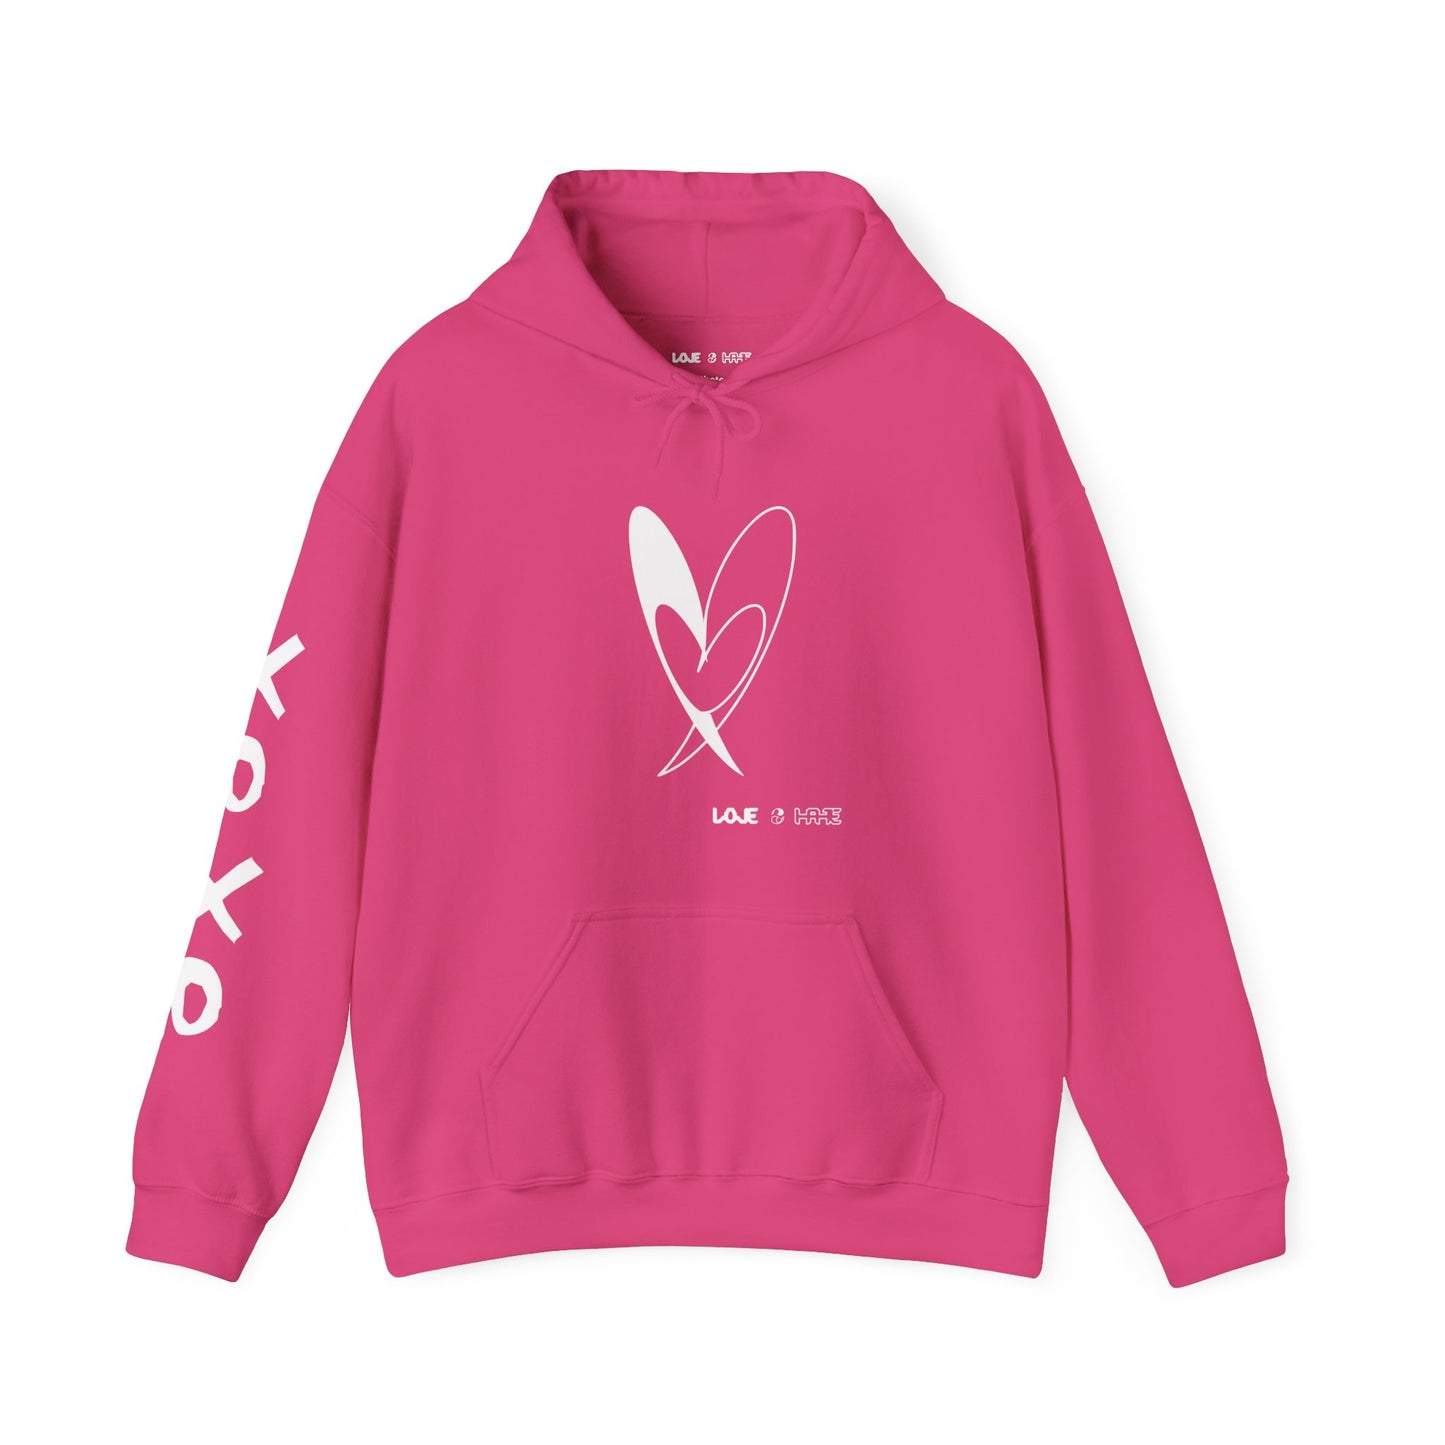 Valentines Love 2 Hate Sweatshirts with custom sleeve print - Unisex